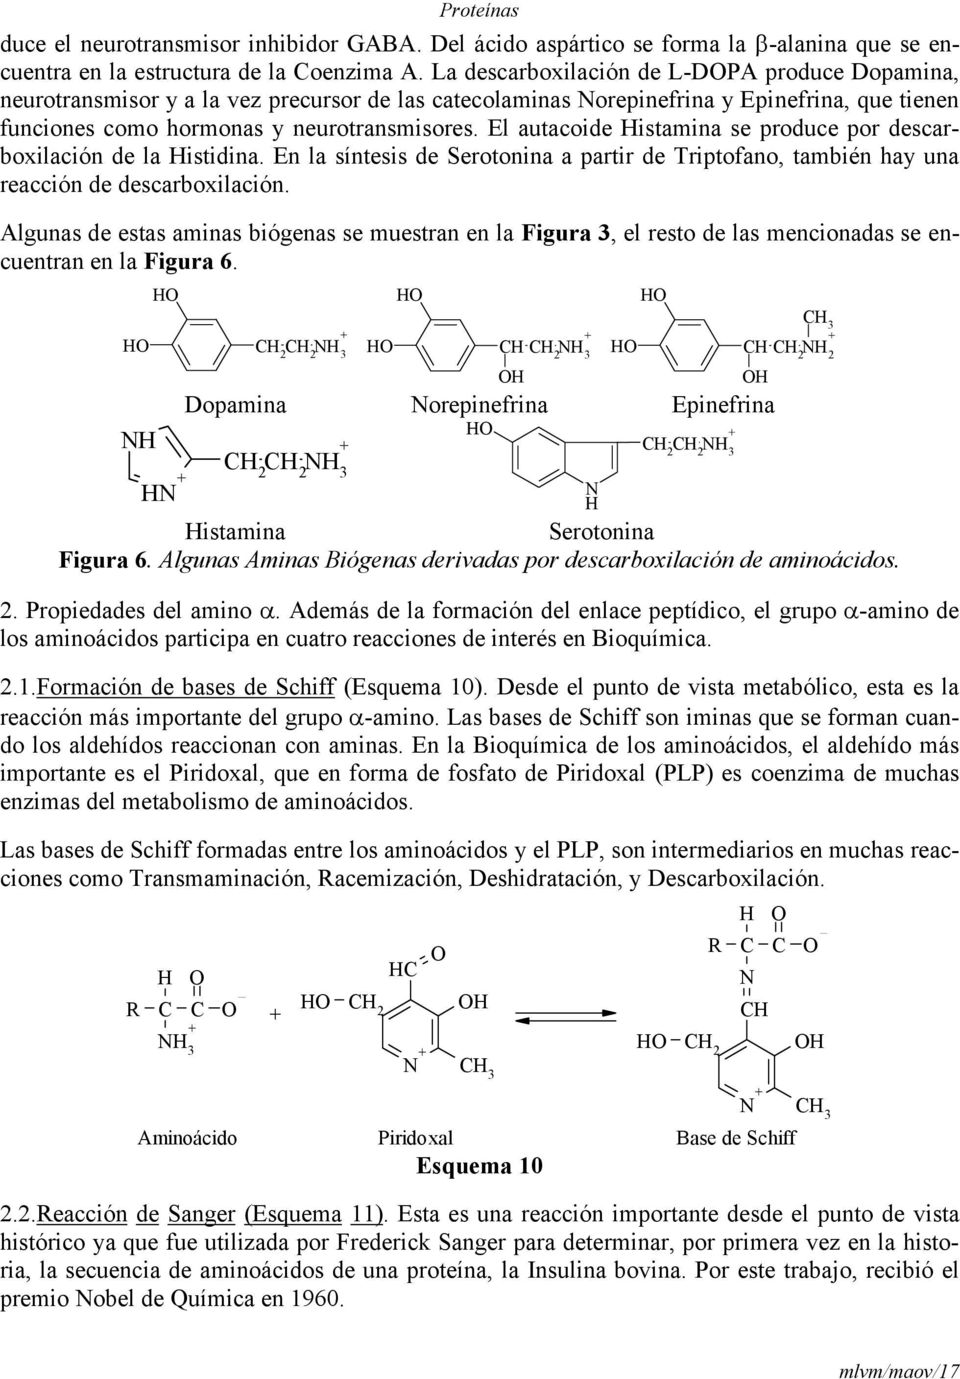 El autacoide istamina se produce por descarboxilación de la istidina. En la síntesis de Serotonina a partir de Triptofano, también hay una reacción de descarboxilación.